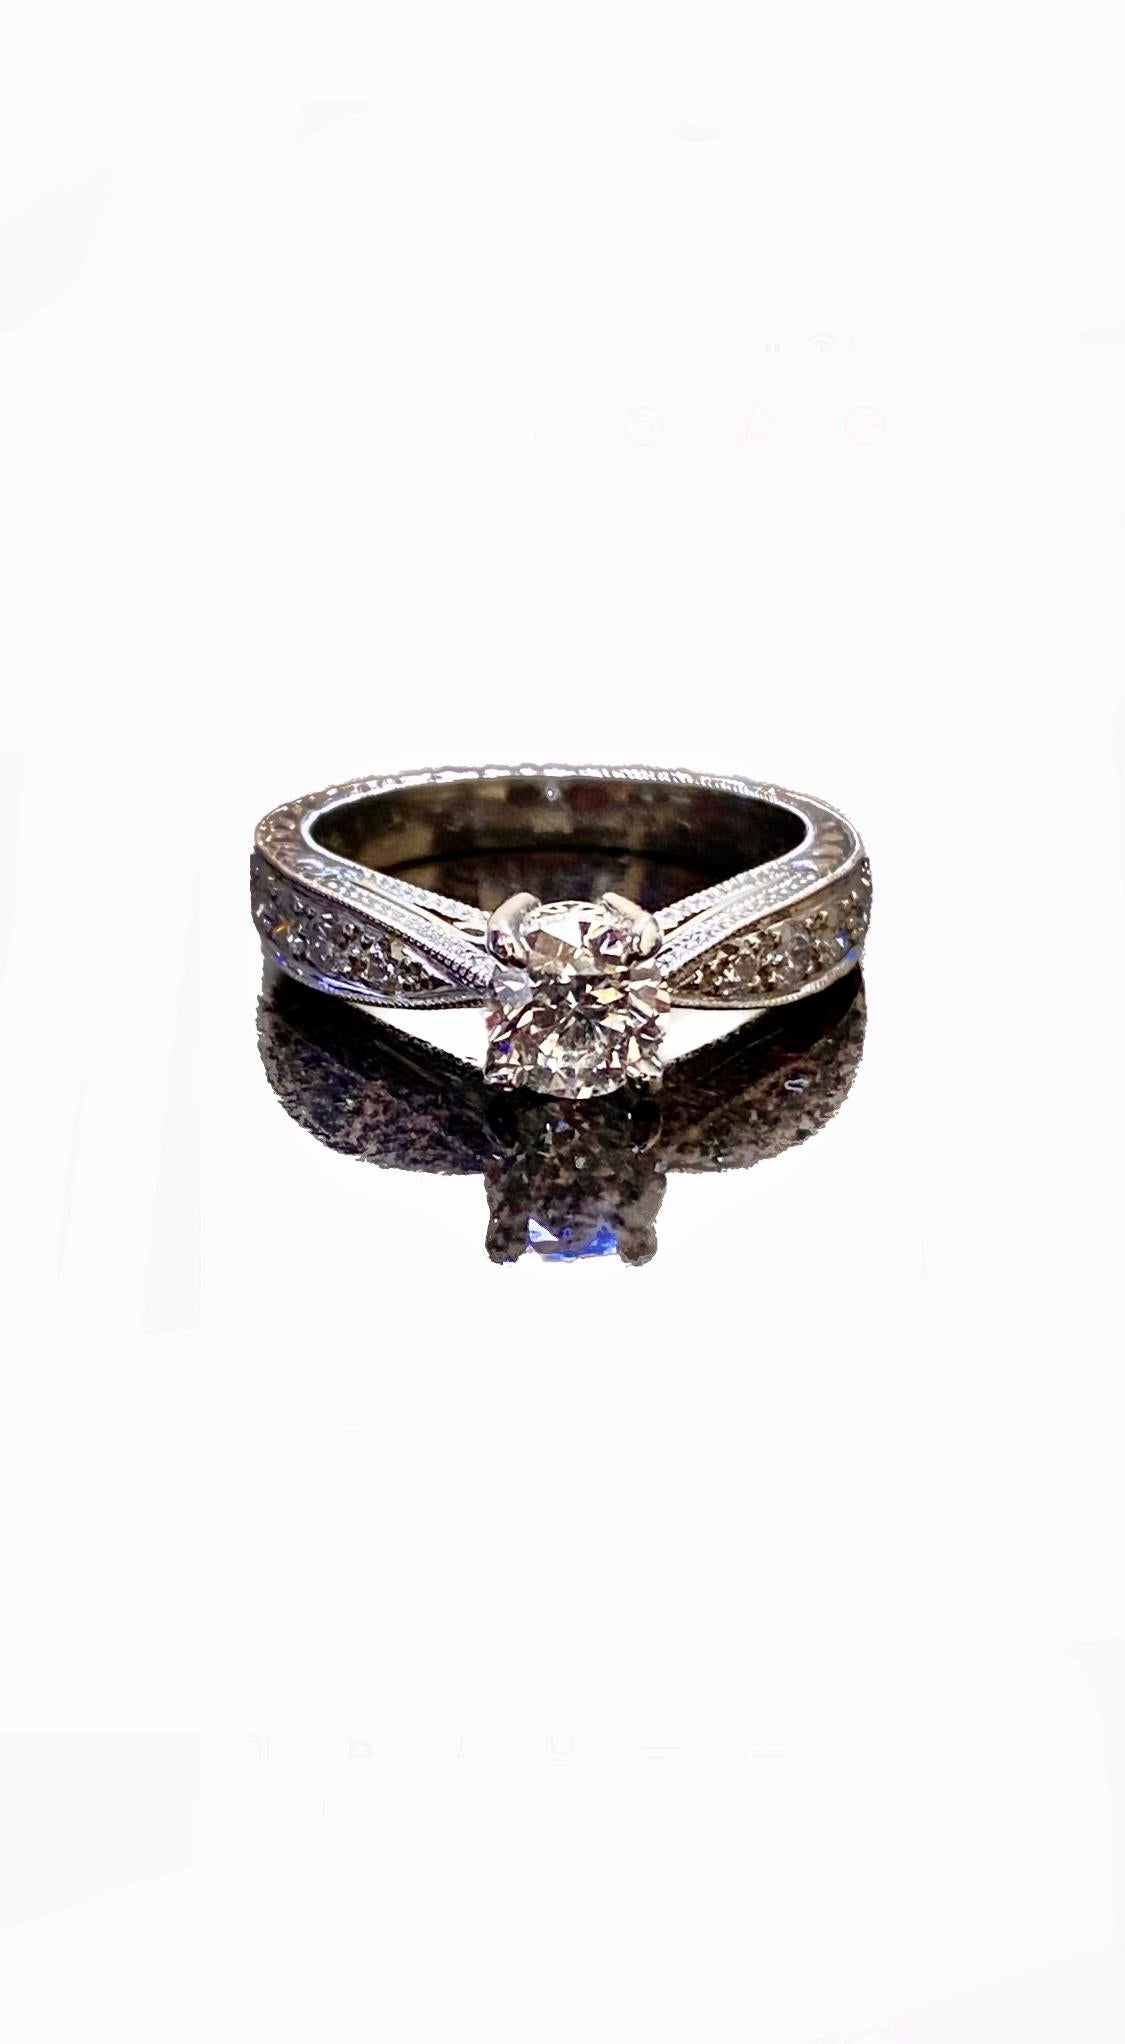 DeKara Designs Collection'S

Metall - 90% Platin, 10% Iridium.

Steine- GIA-zertifizierter runder Brillantdiamant F Farbe I1 Reinheit 0,71 Karat, 8 runde Diamanten F-G Farbe VS1-VS2 Reinheit 0,28 Karat.

Diamant ist